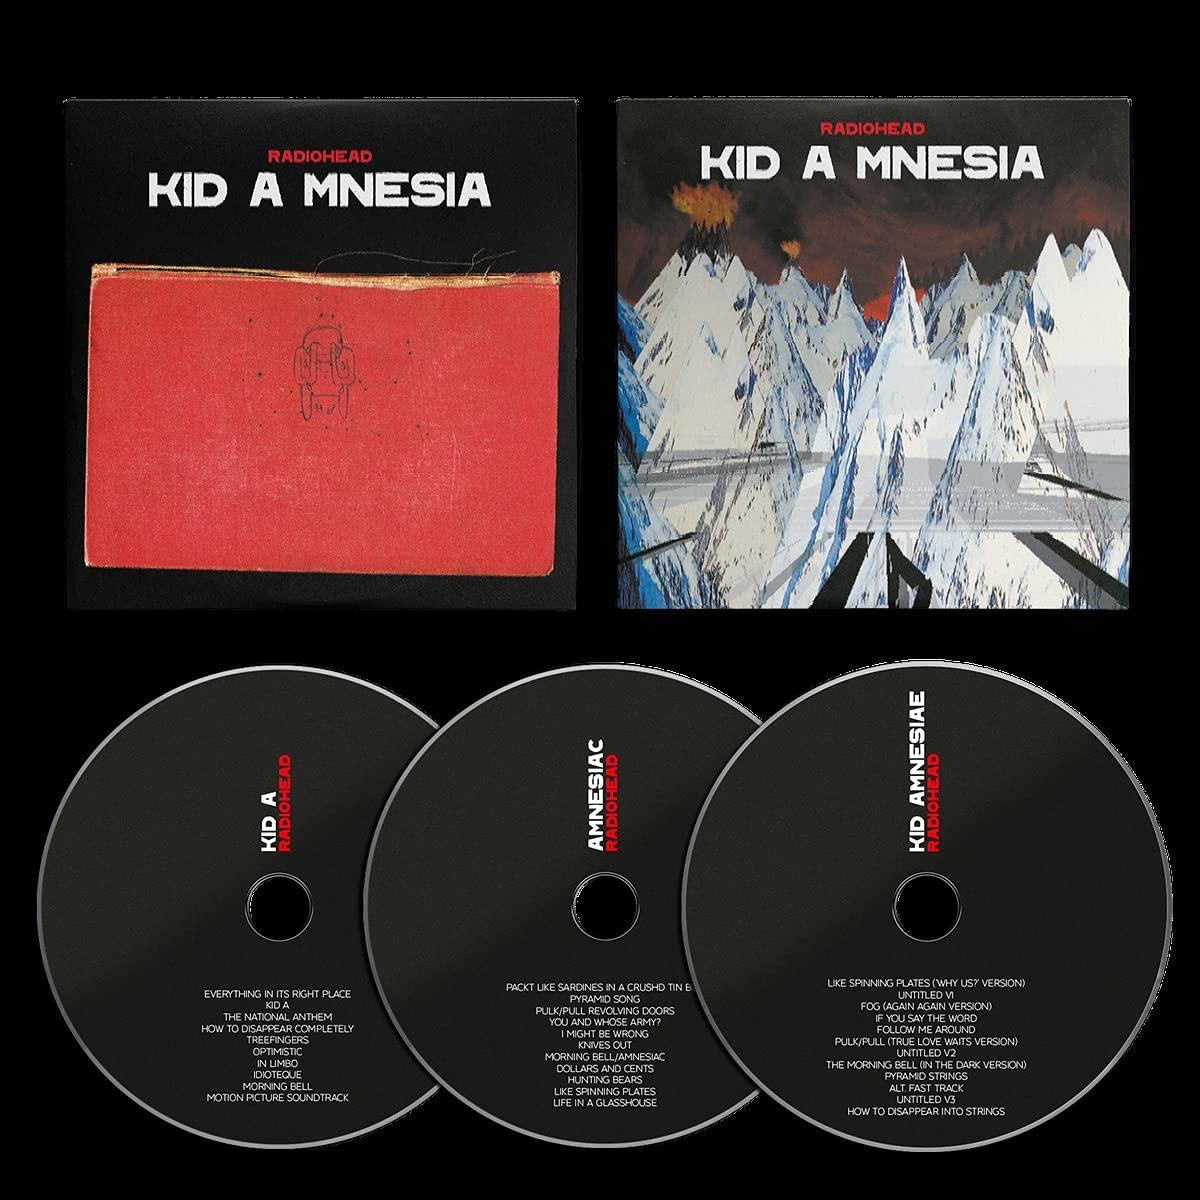 (3 Kid Mnesia Radiohead - A - (CD) Cd)